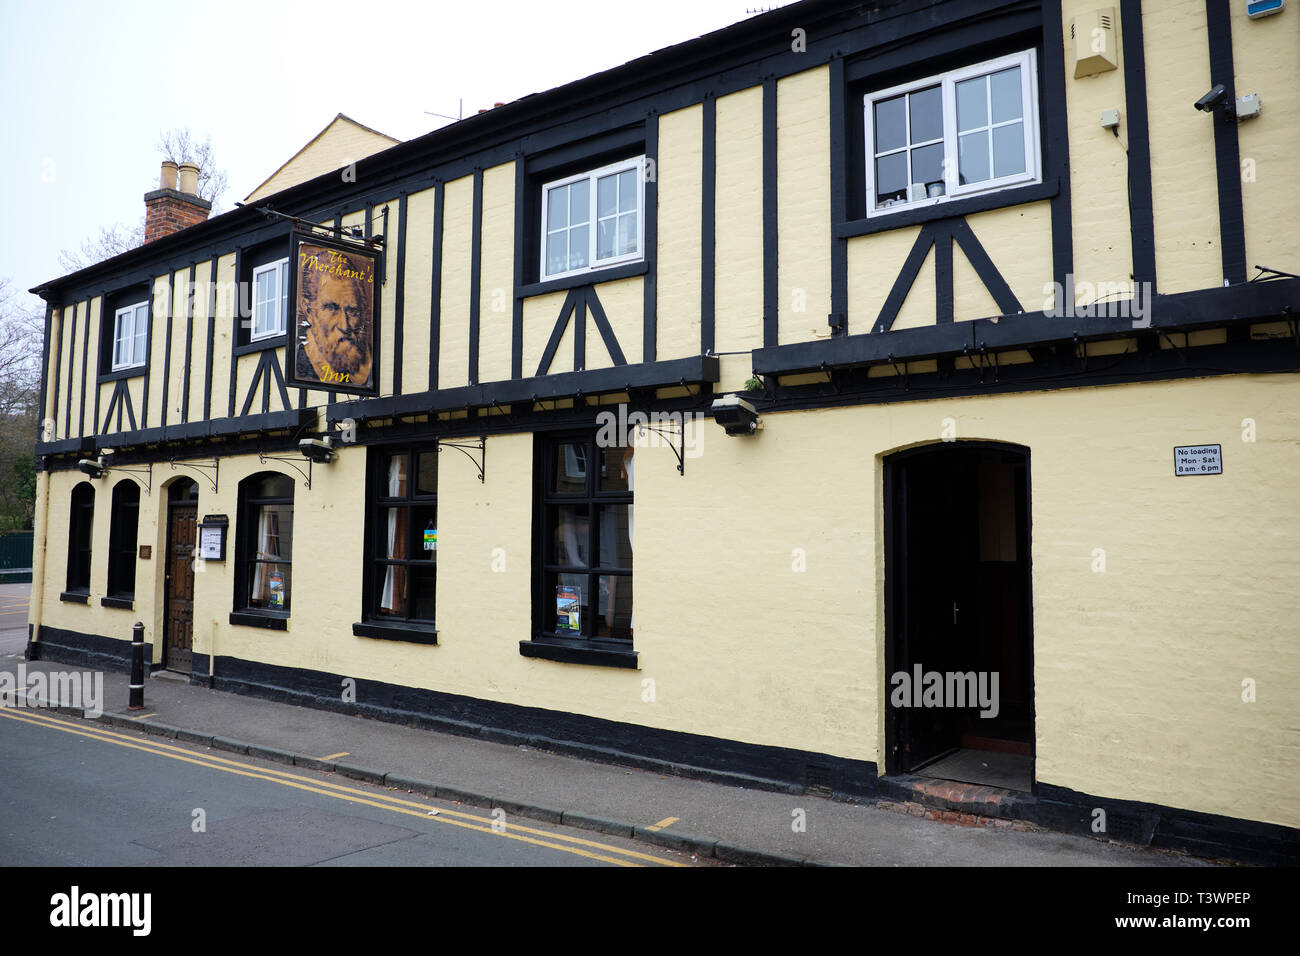 Facade Of The Merchants Inn, Little Church Street, Rugby, Warwickshire, UK Stock Photo